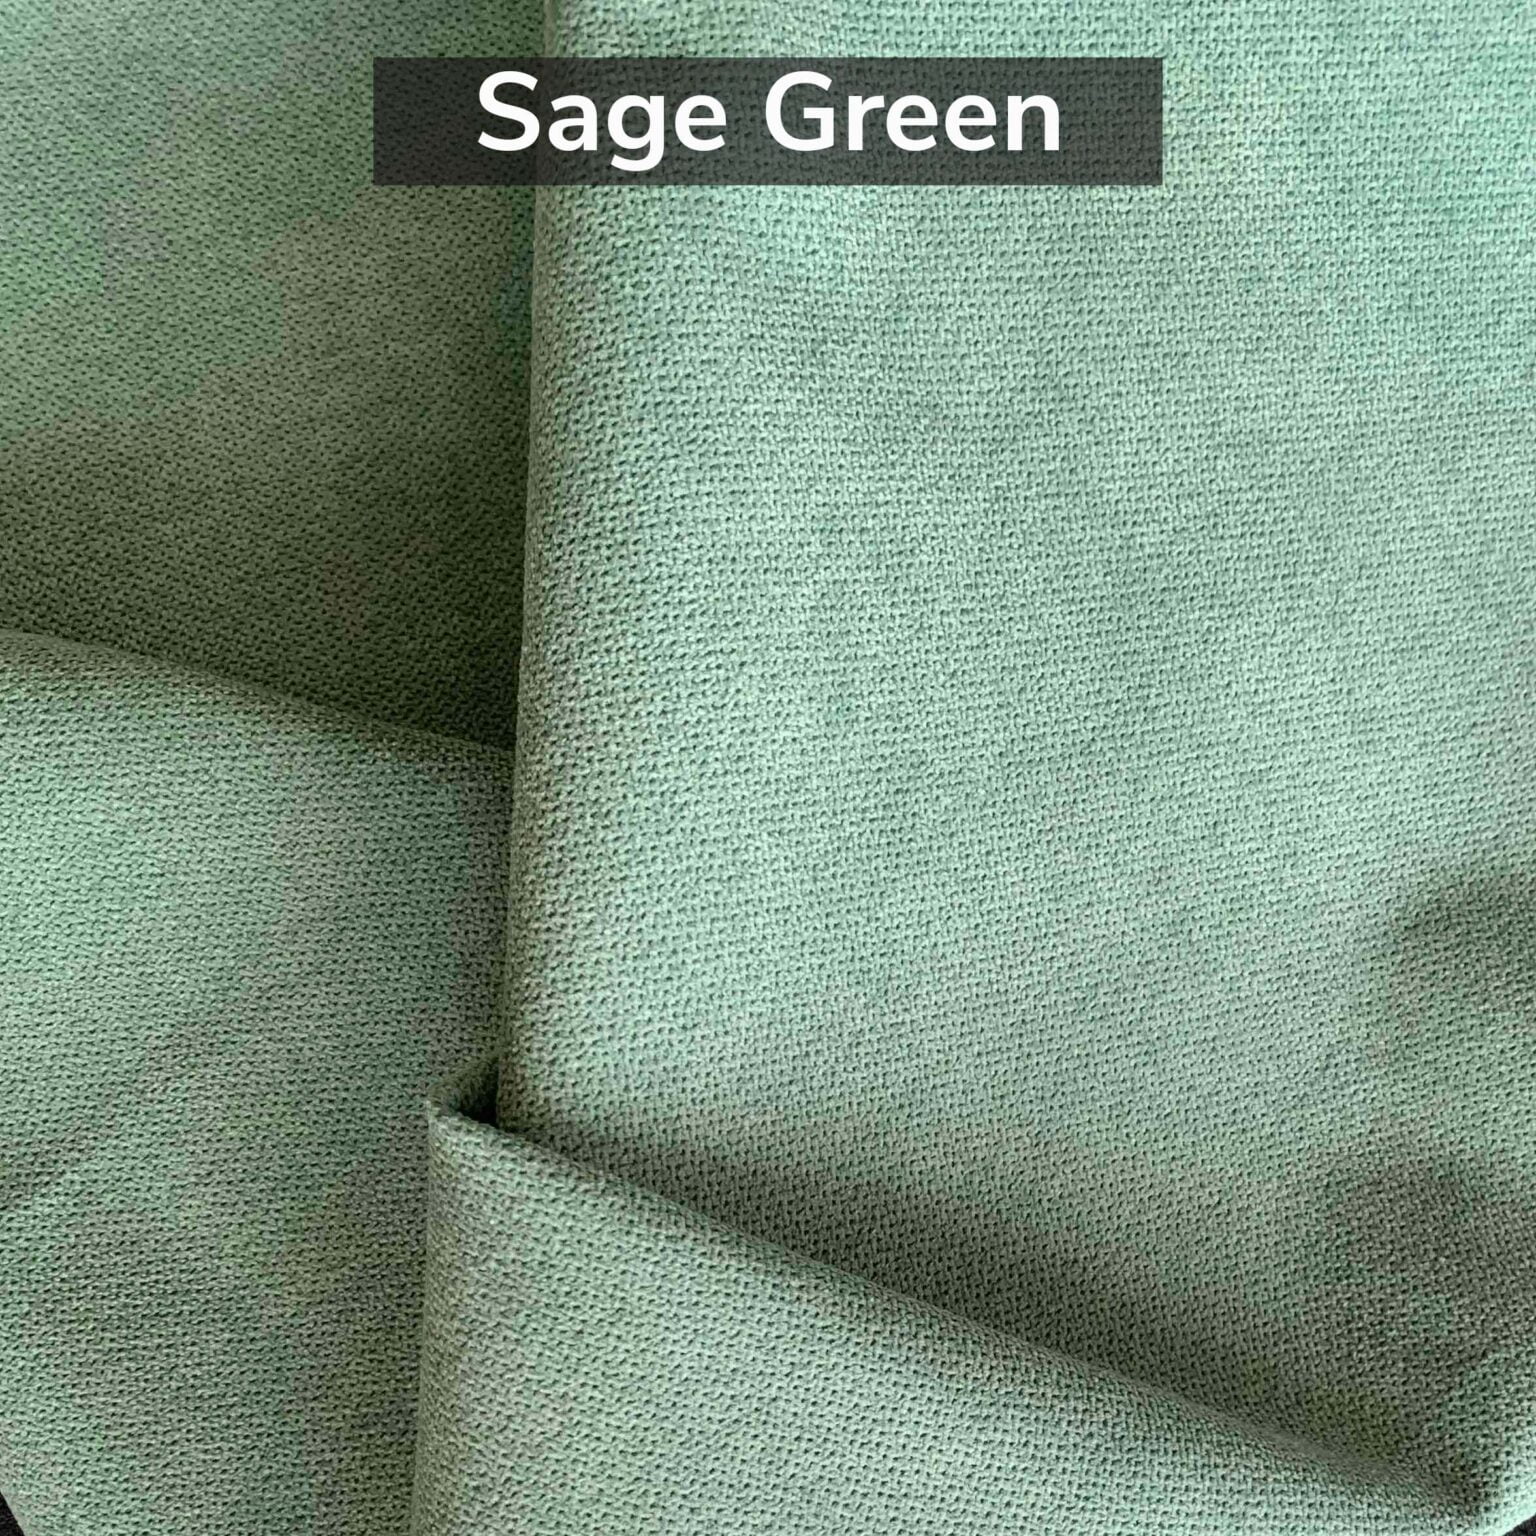 Sagegreen 4f9ef18c ec41 49f2 bd53 2fd78d0152a9